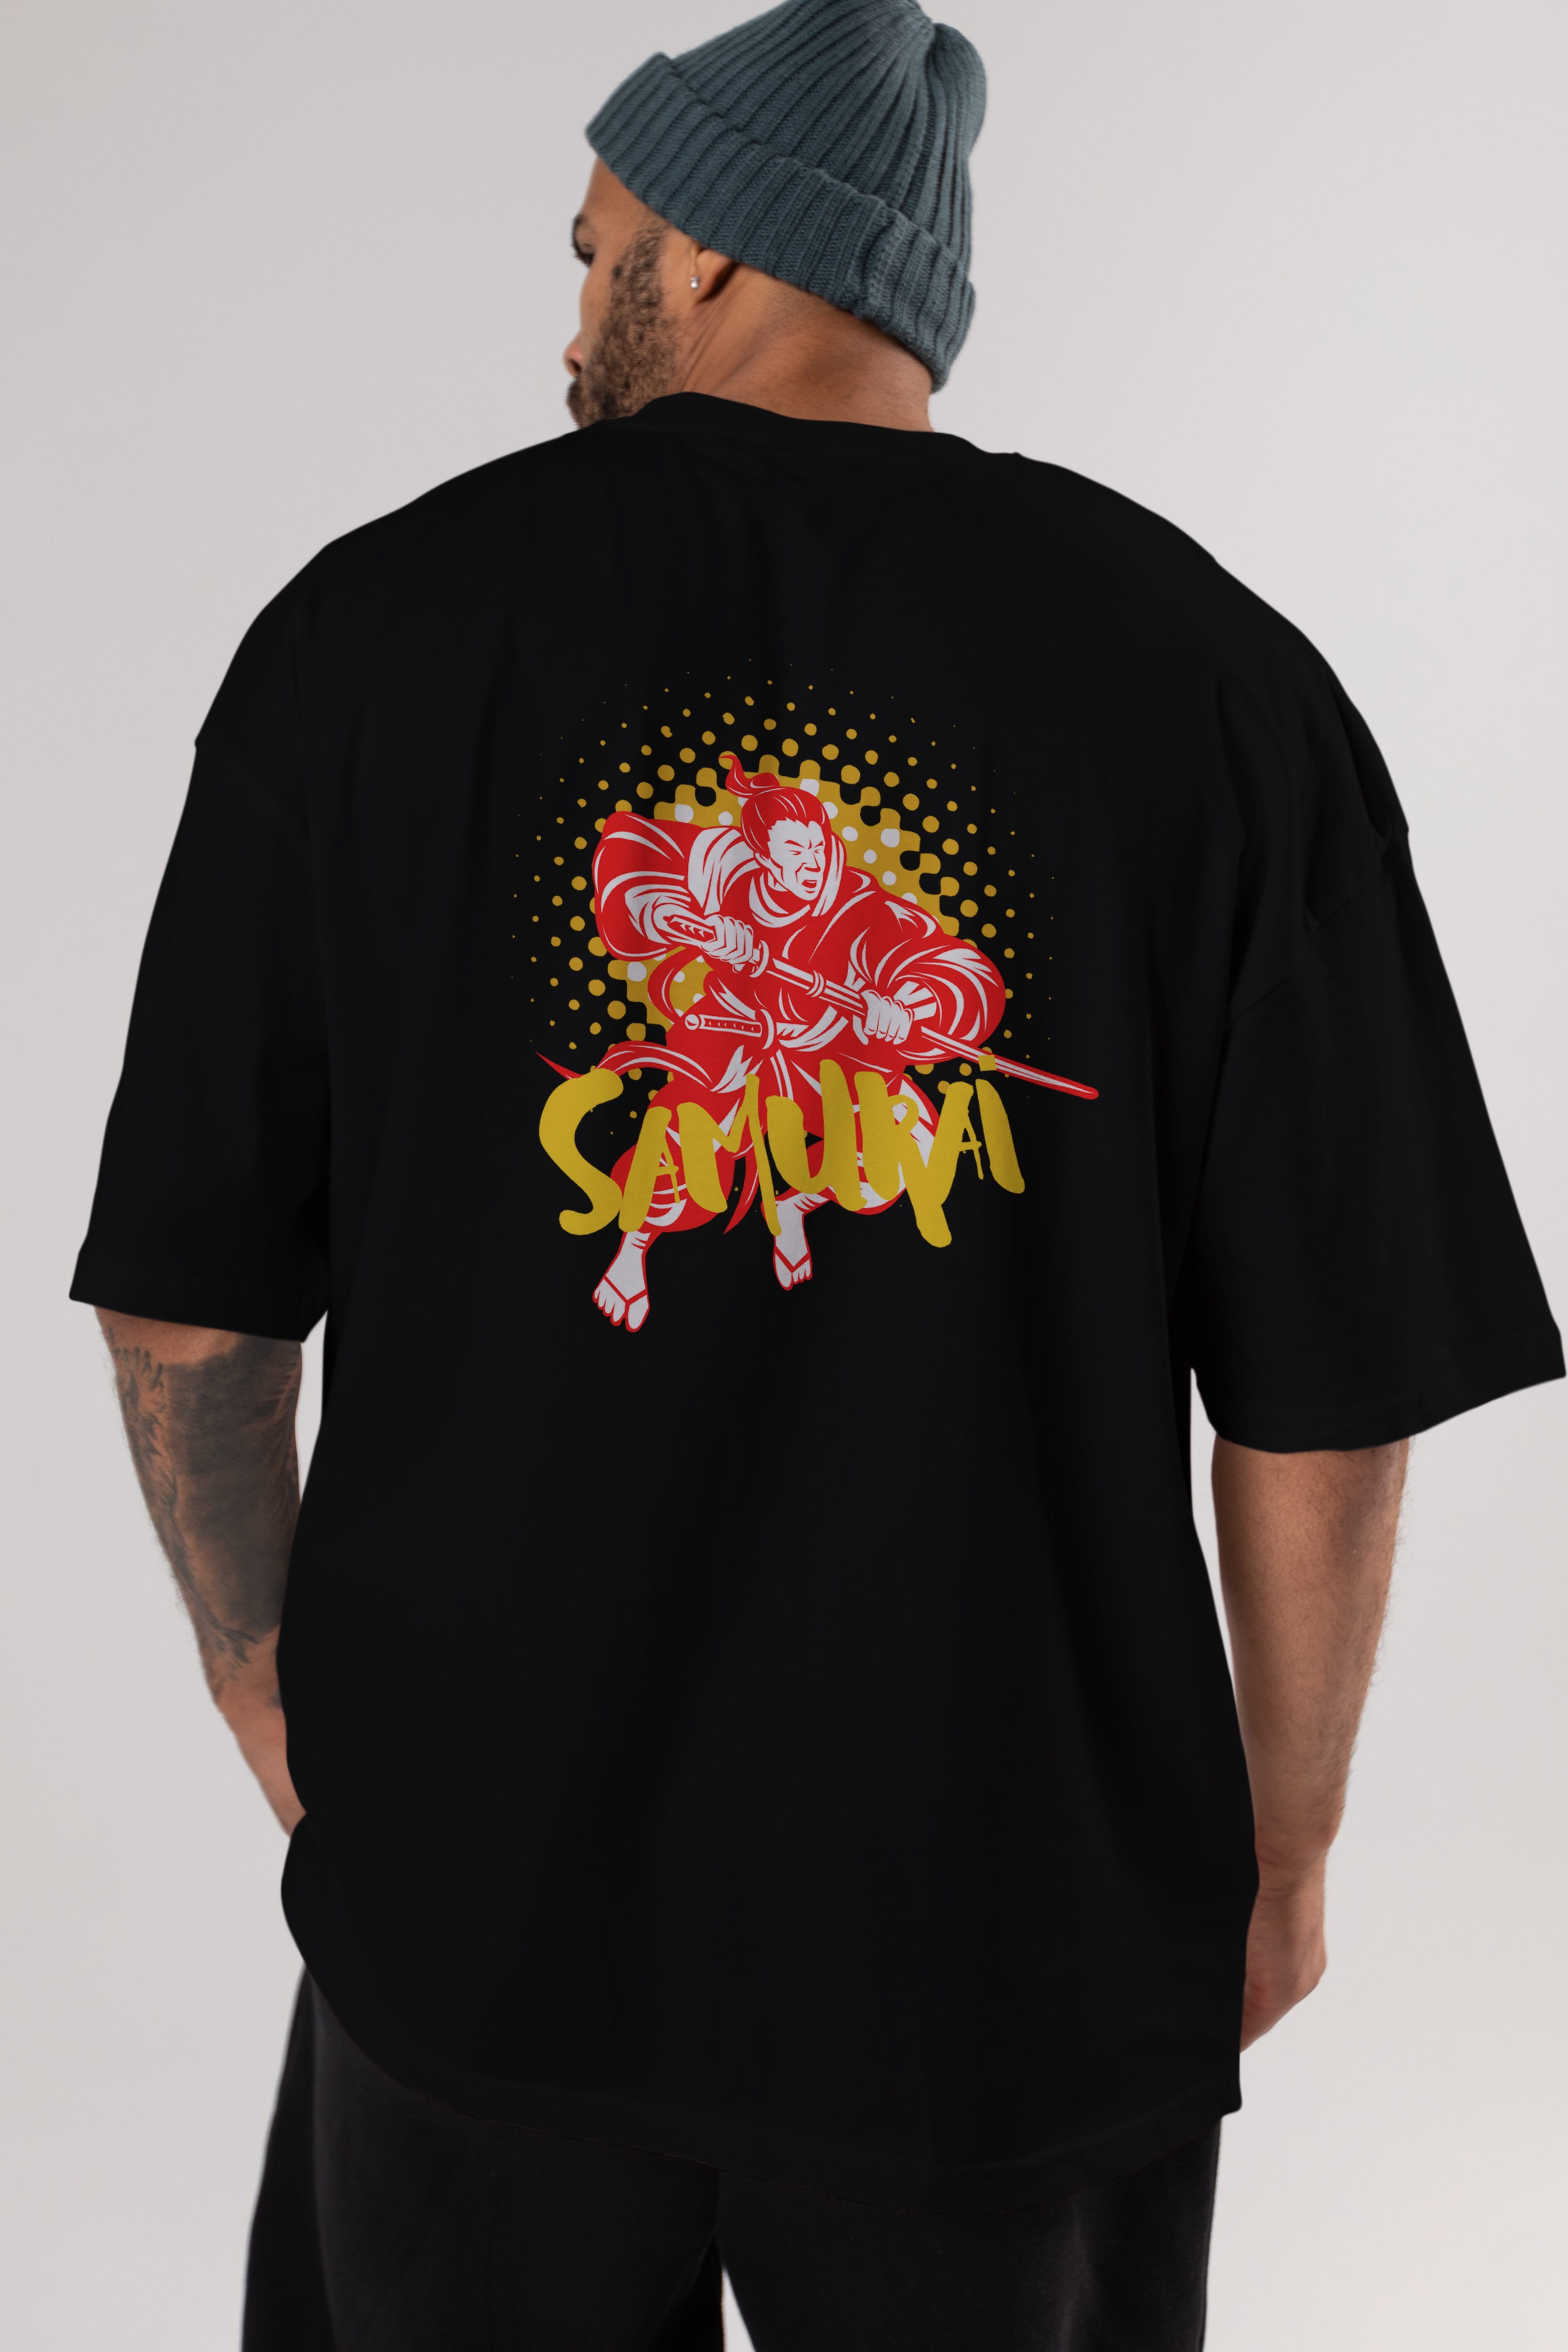 Samurai Arka Baskılı Oversize t-shirt Erkek Kadın Unisex